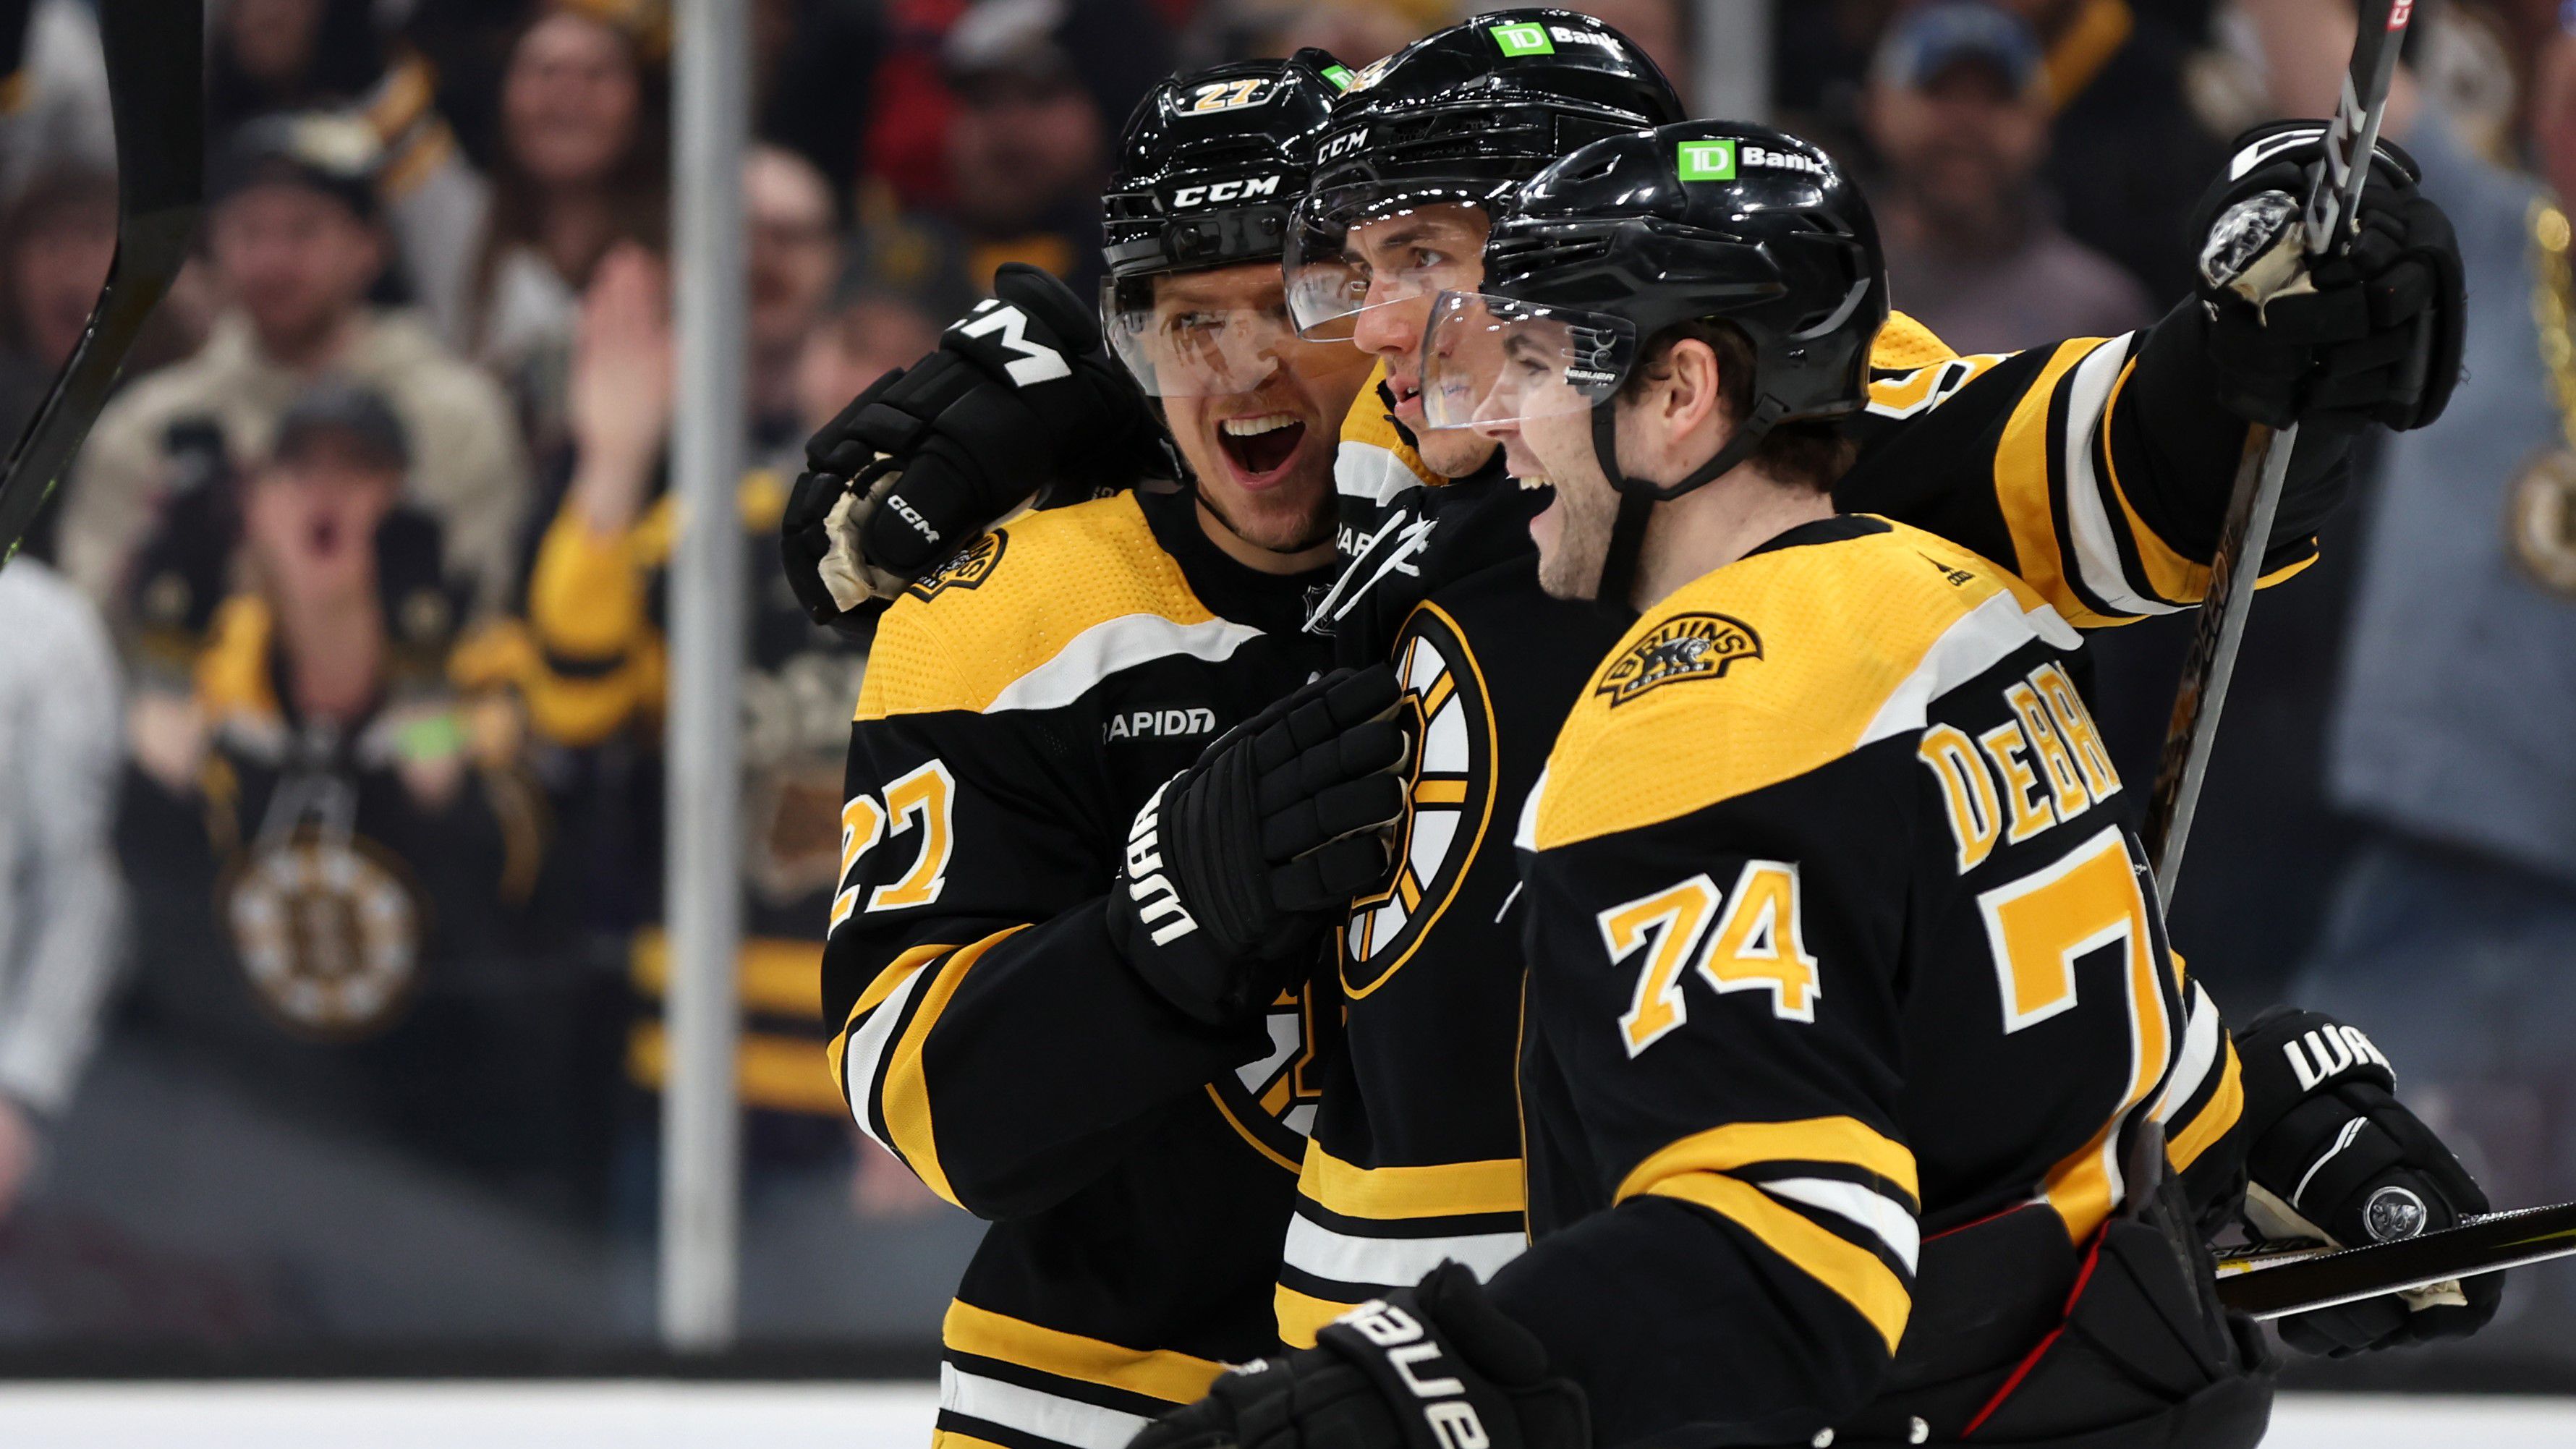 Újabb ligarekordot döntött meg a Boston Bruins